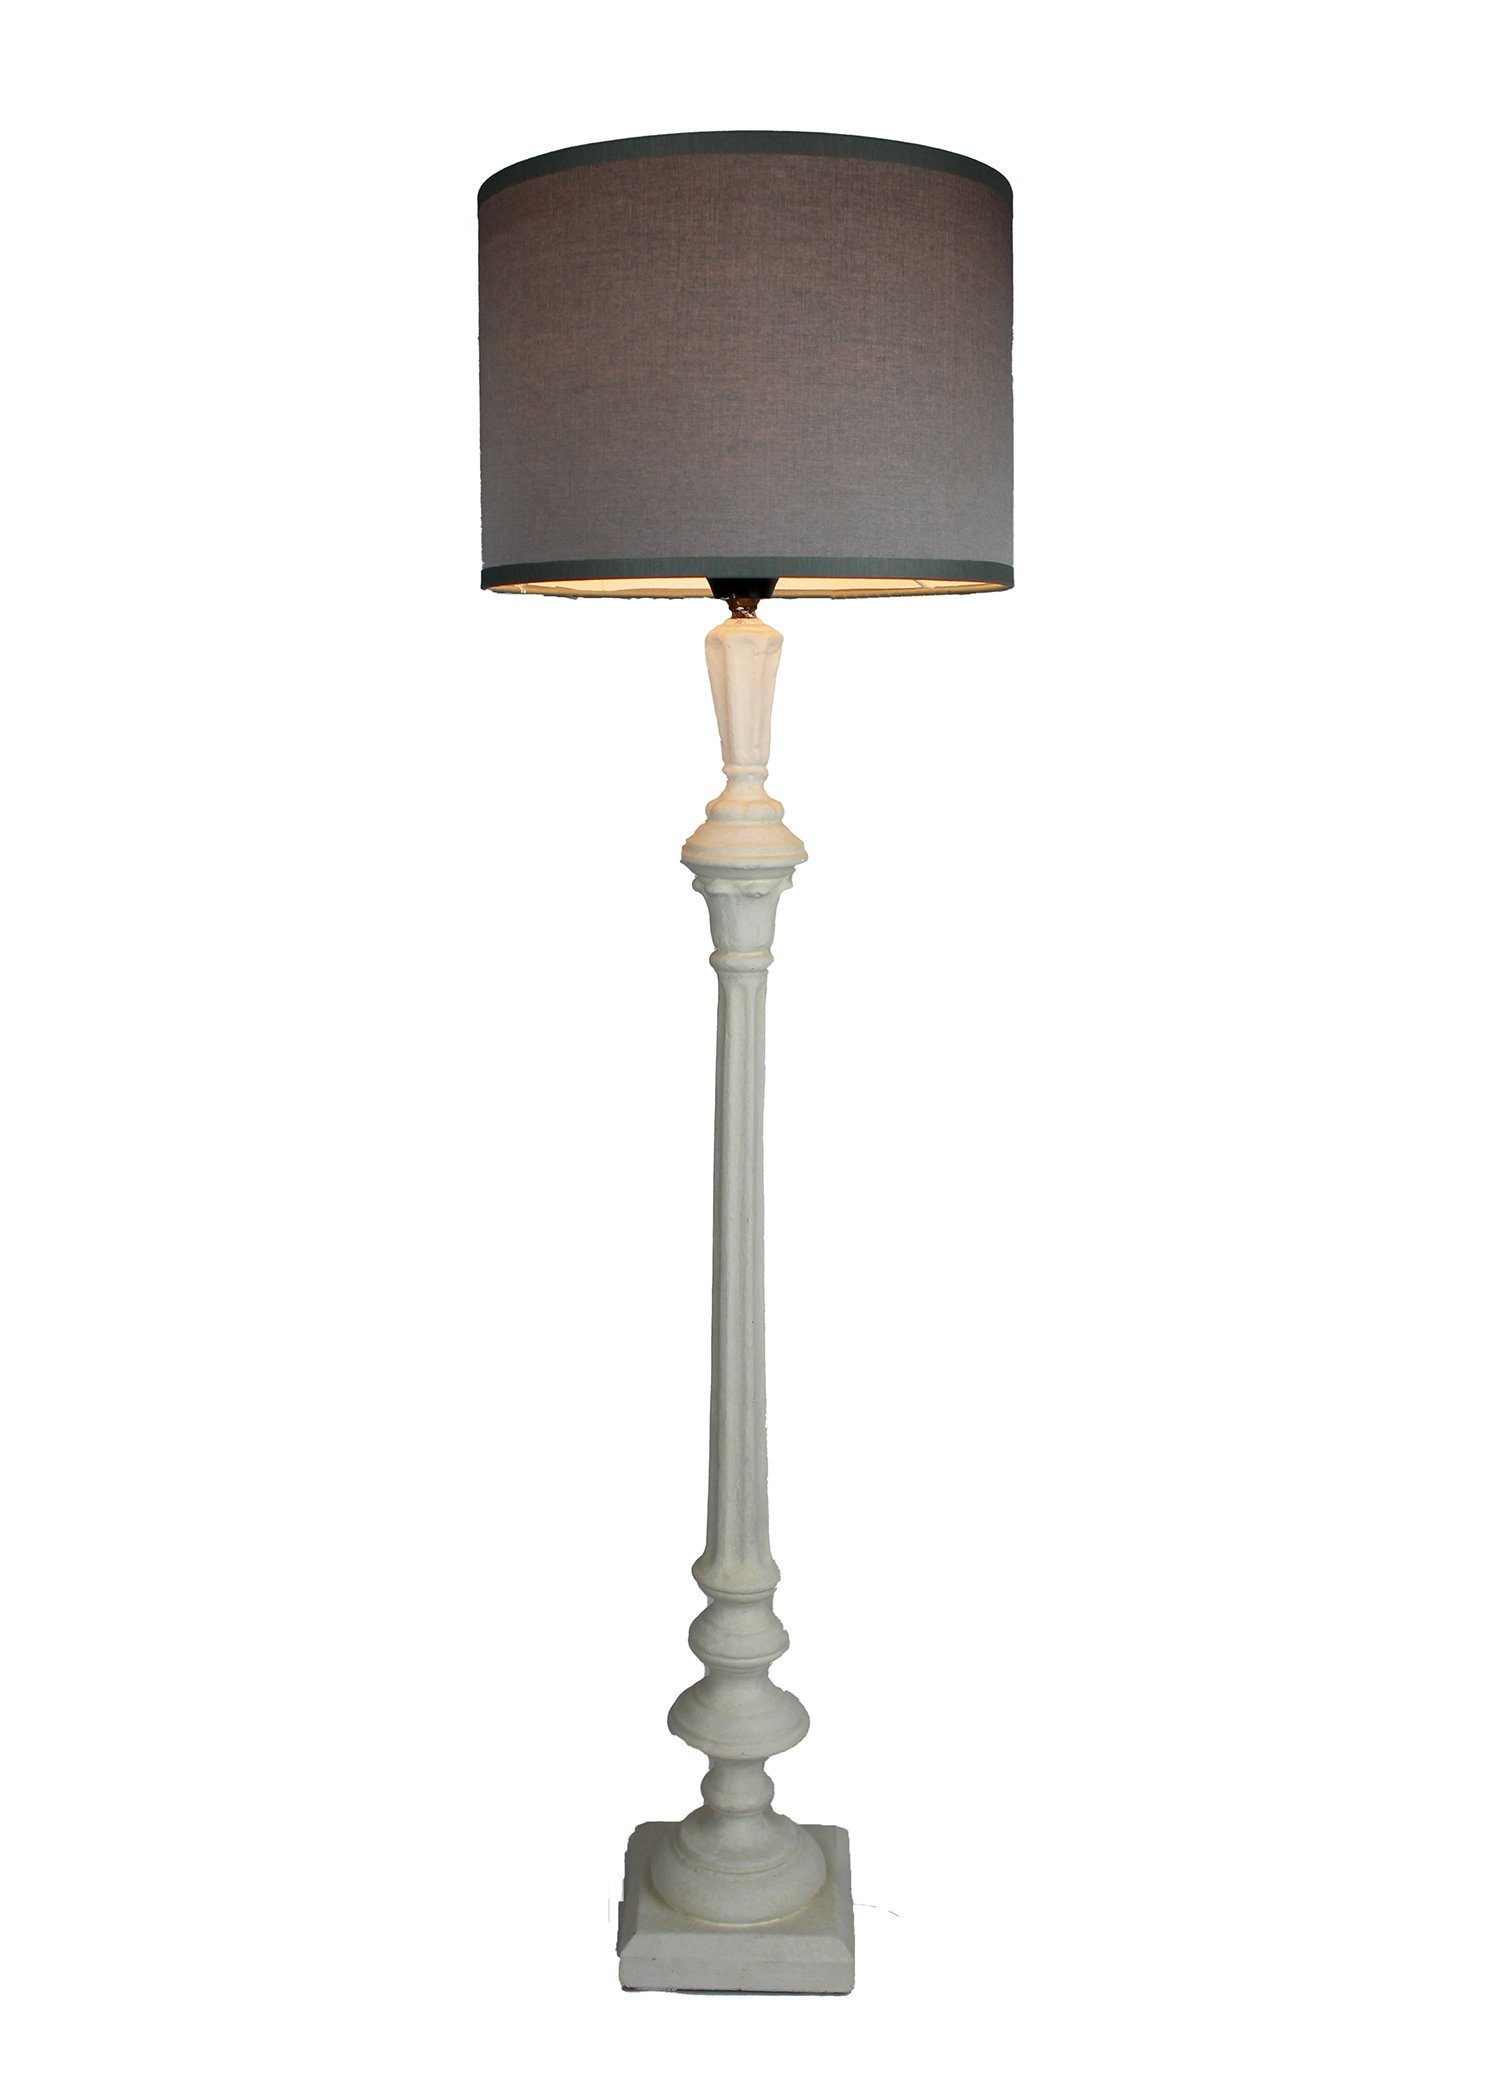 Signature Home Collection Tischleuchte Tischlampe schmal Holz gedrechselt  lackiert mit Lampenschirm, ohne Leuchtmittel, warmweiß, handgefertigt in  Italien